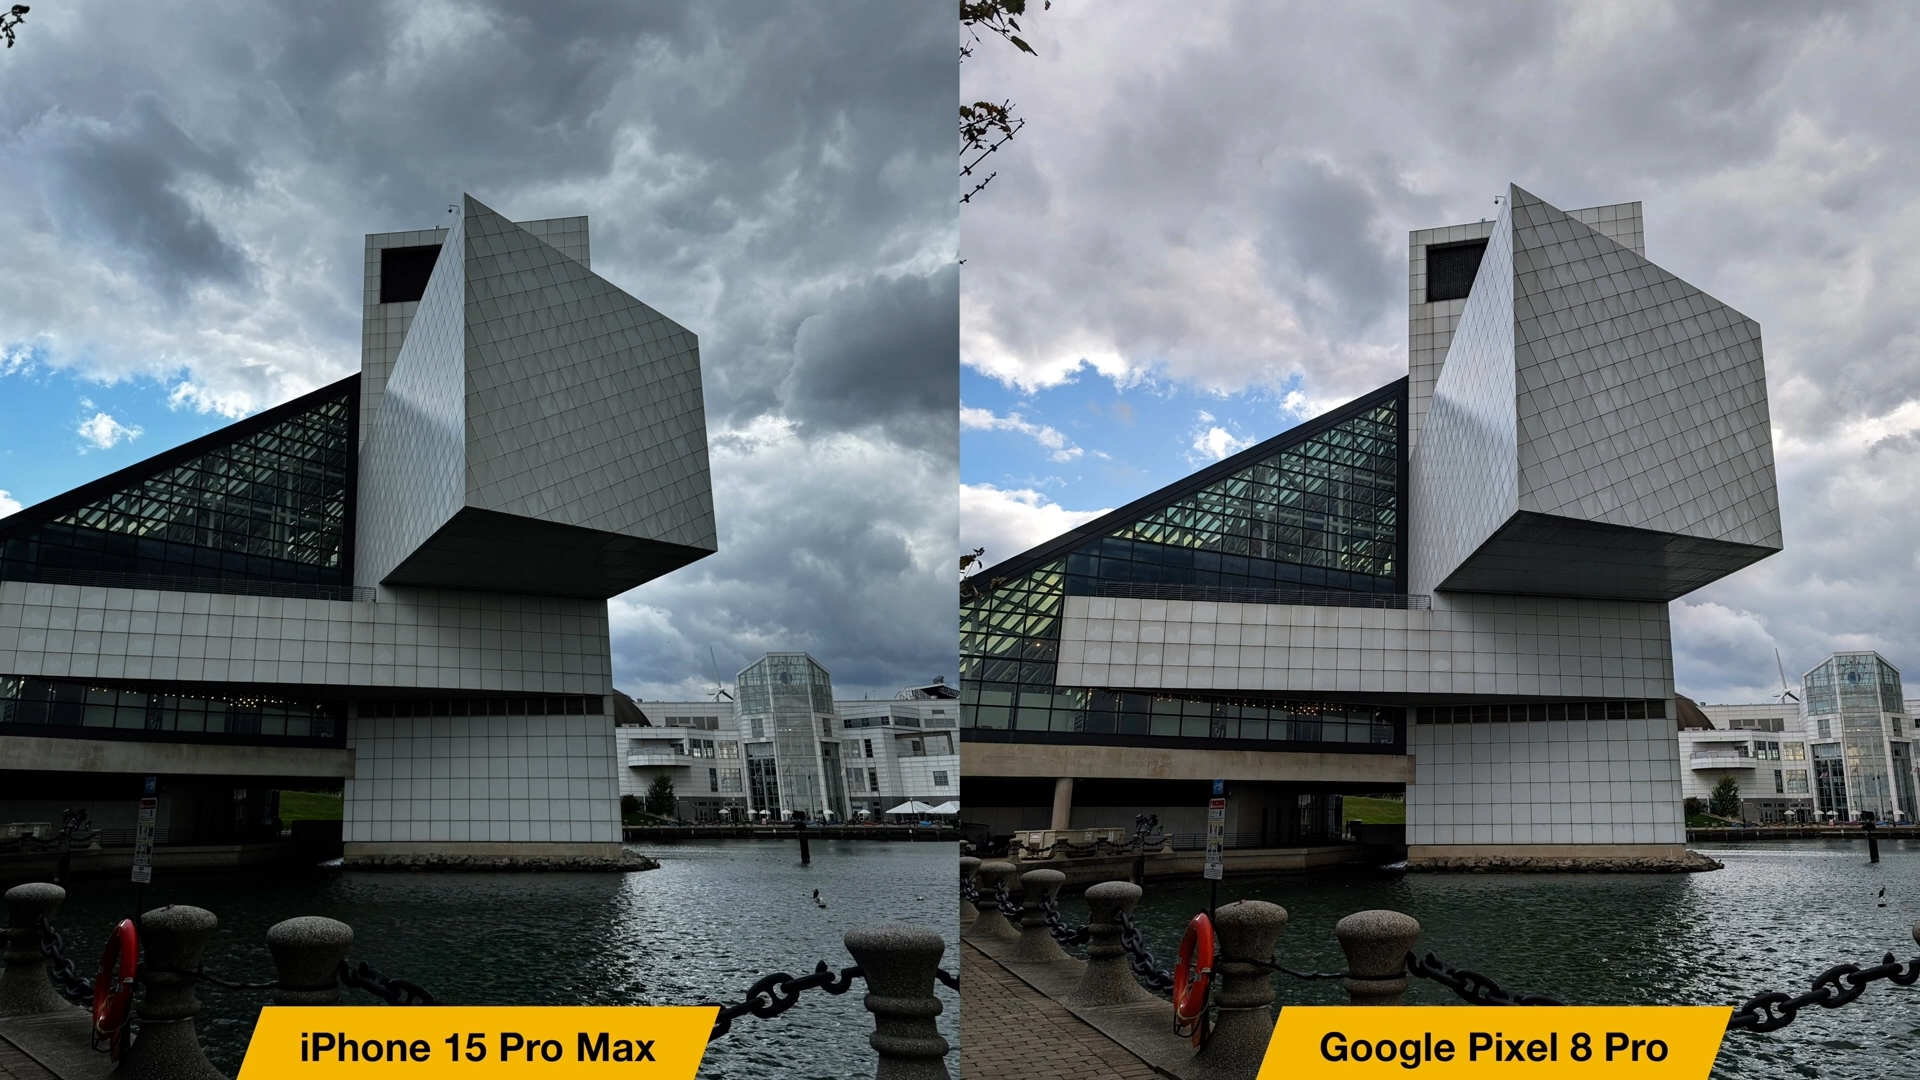 iPhoneIslam.com'dan iPhone 15 Pro Max kamera ile Google Pixel 8 Pro kamera arasındaki karşılaştırma.